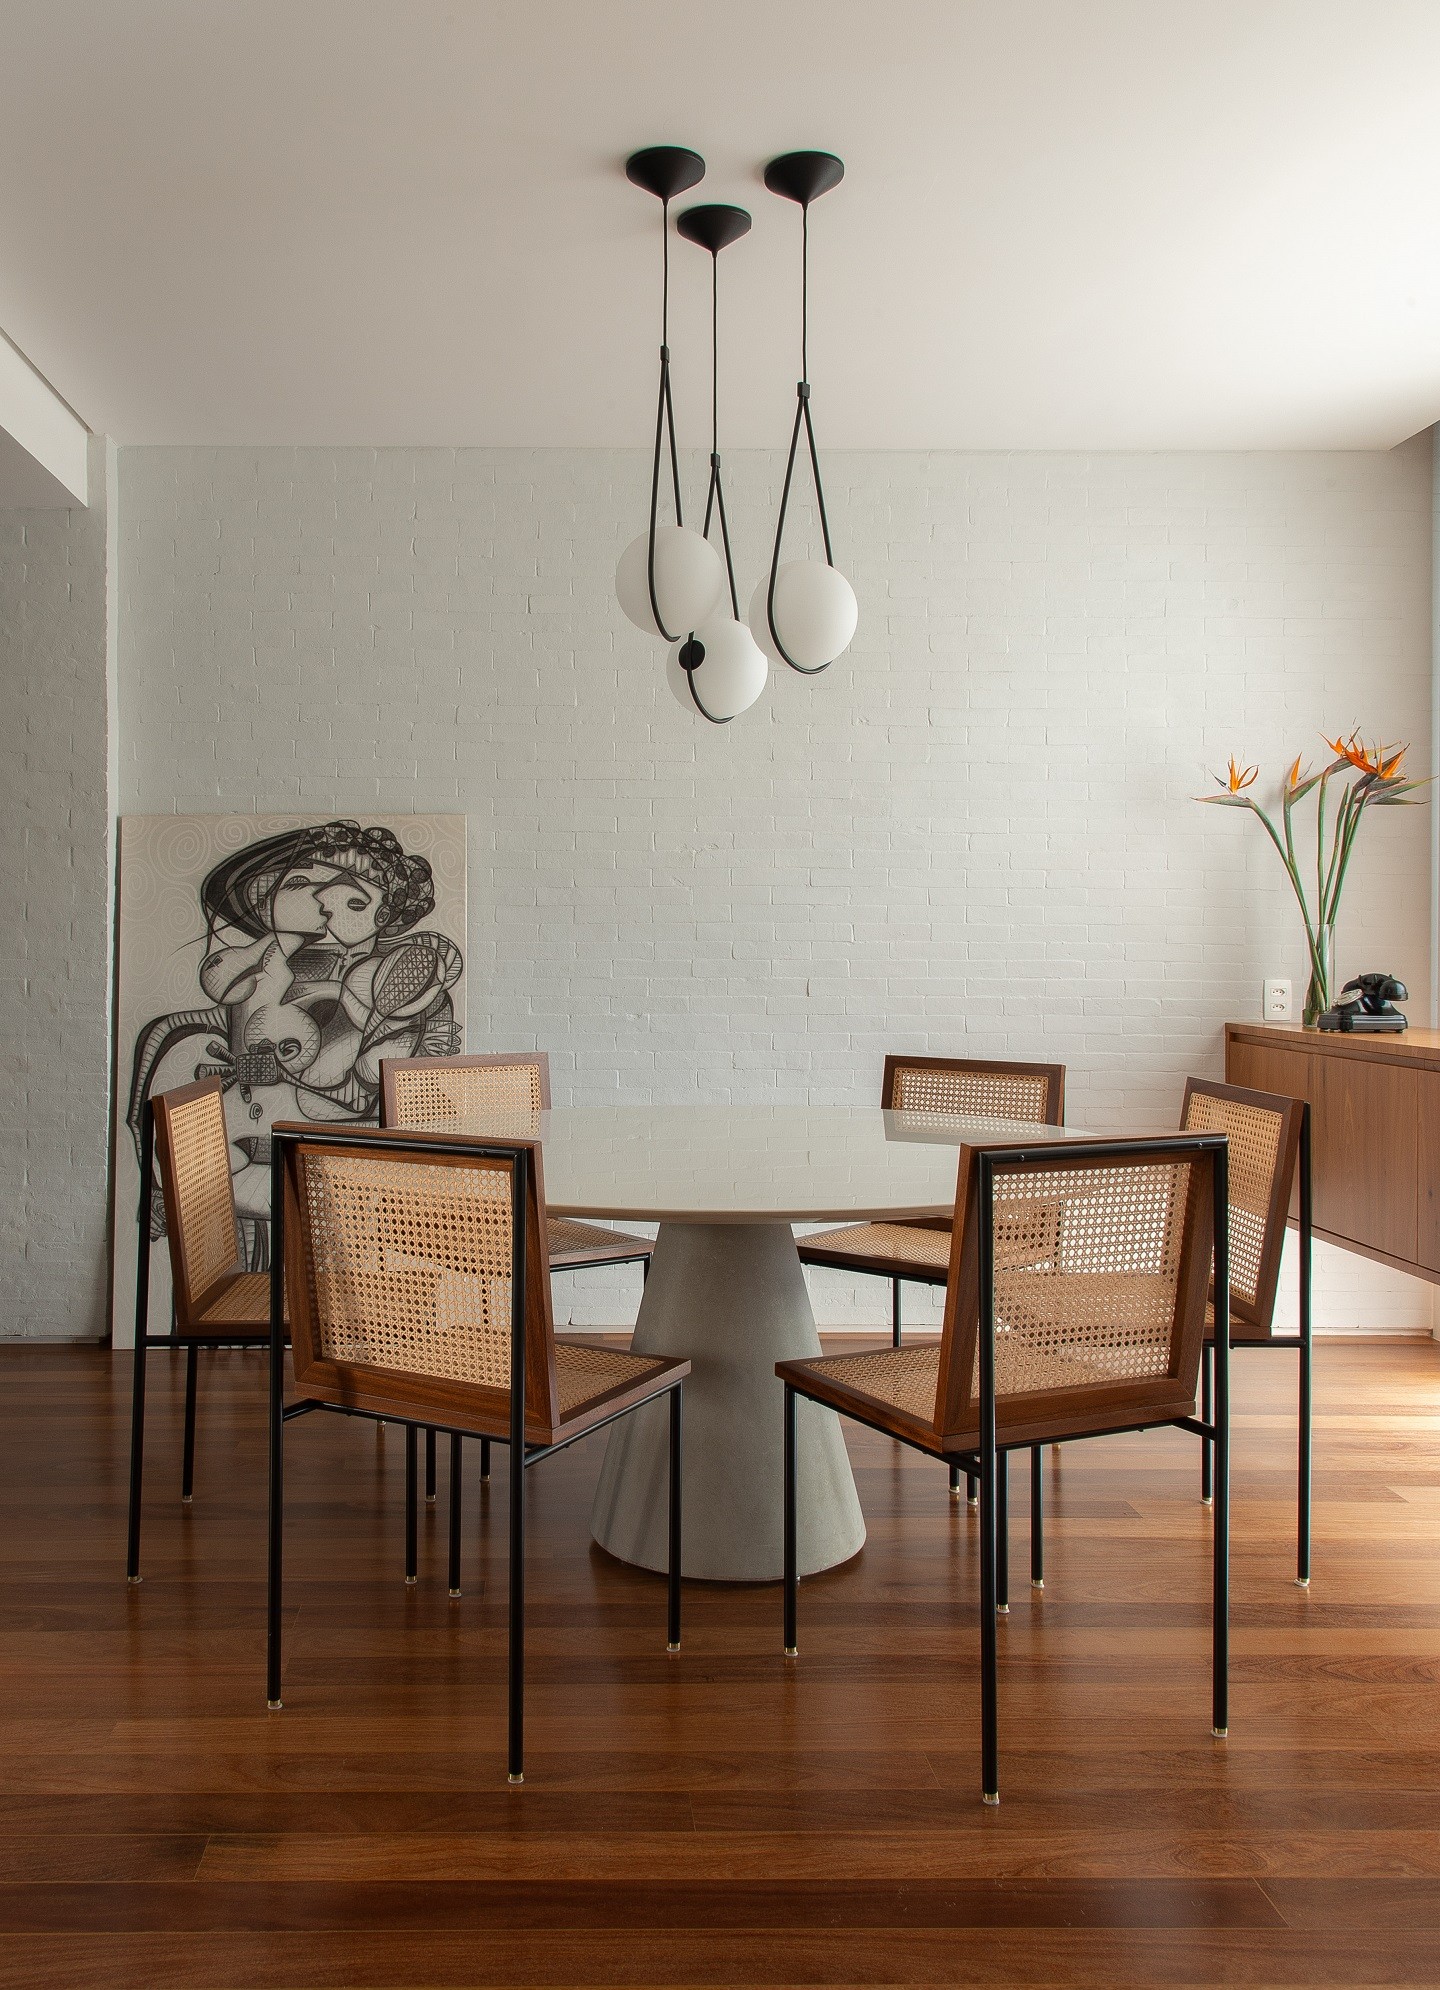 Décor do dia: sala de jantar minimalista mistura preto, branco e madeira (Foto: Caca Brakte)